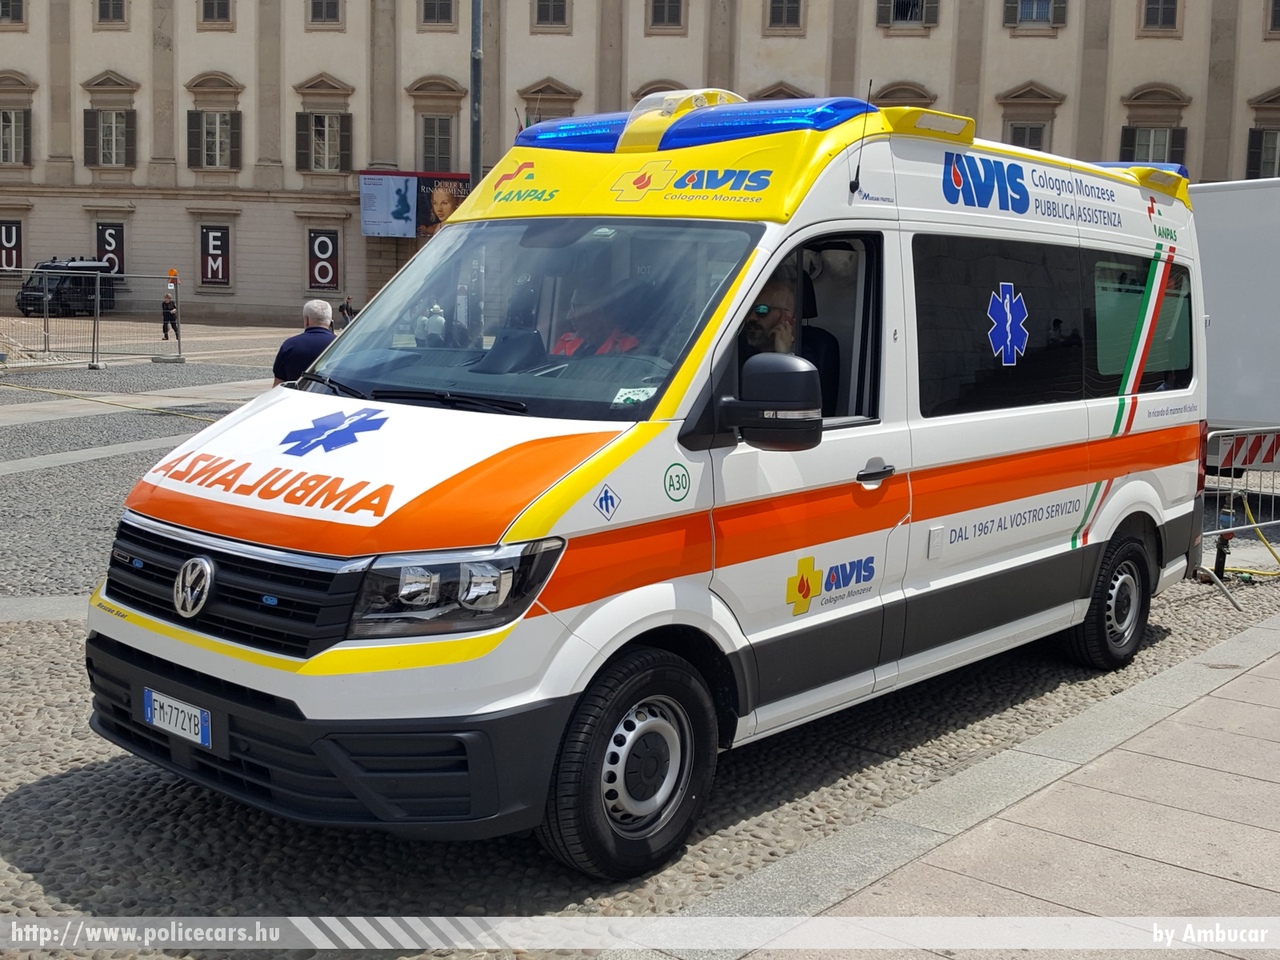 Volkswagen Crafter, fotó: Ambucar 
Keywords: olasz Olaszország mentő mentőautó italian Italy ambulance